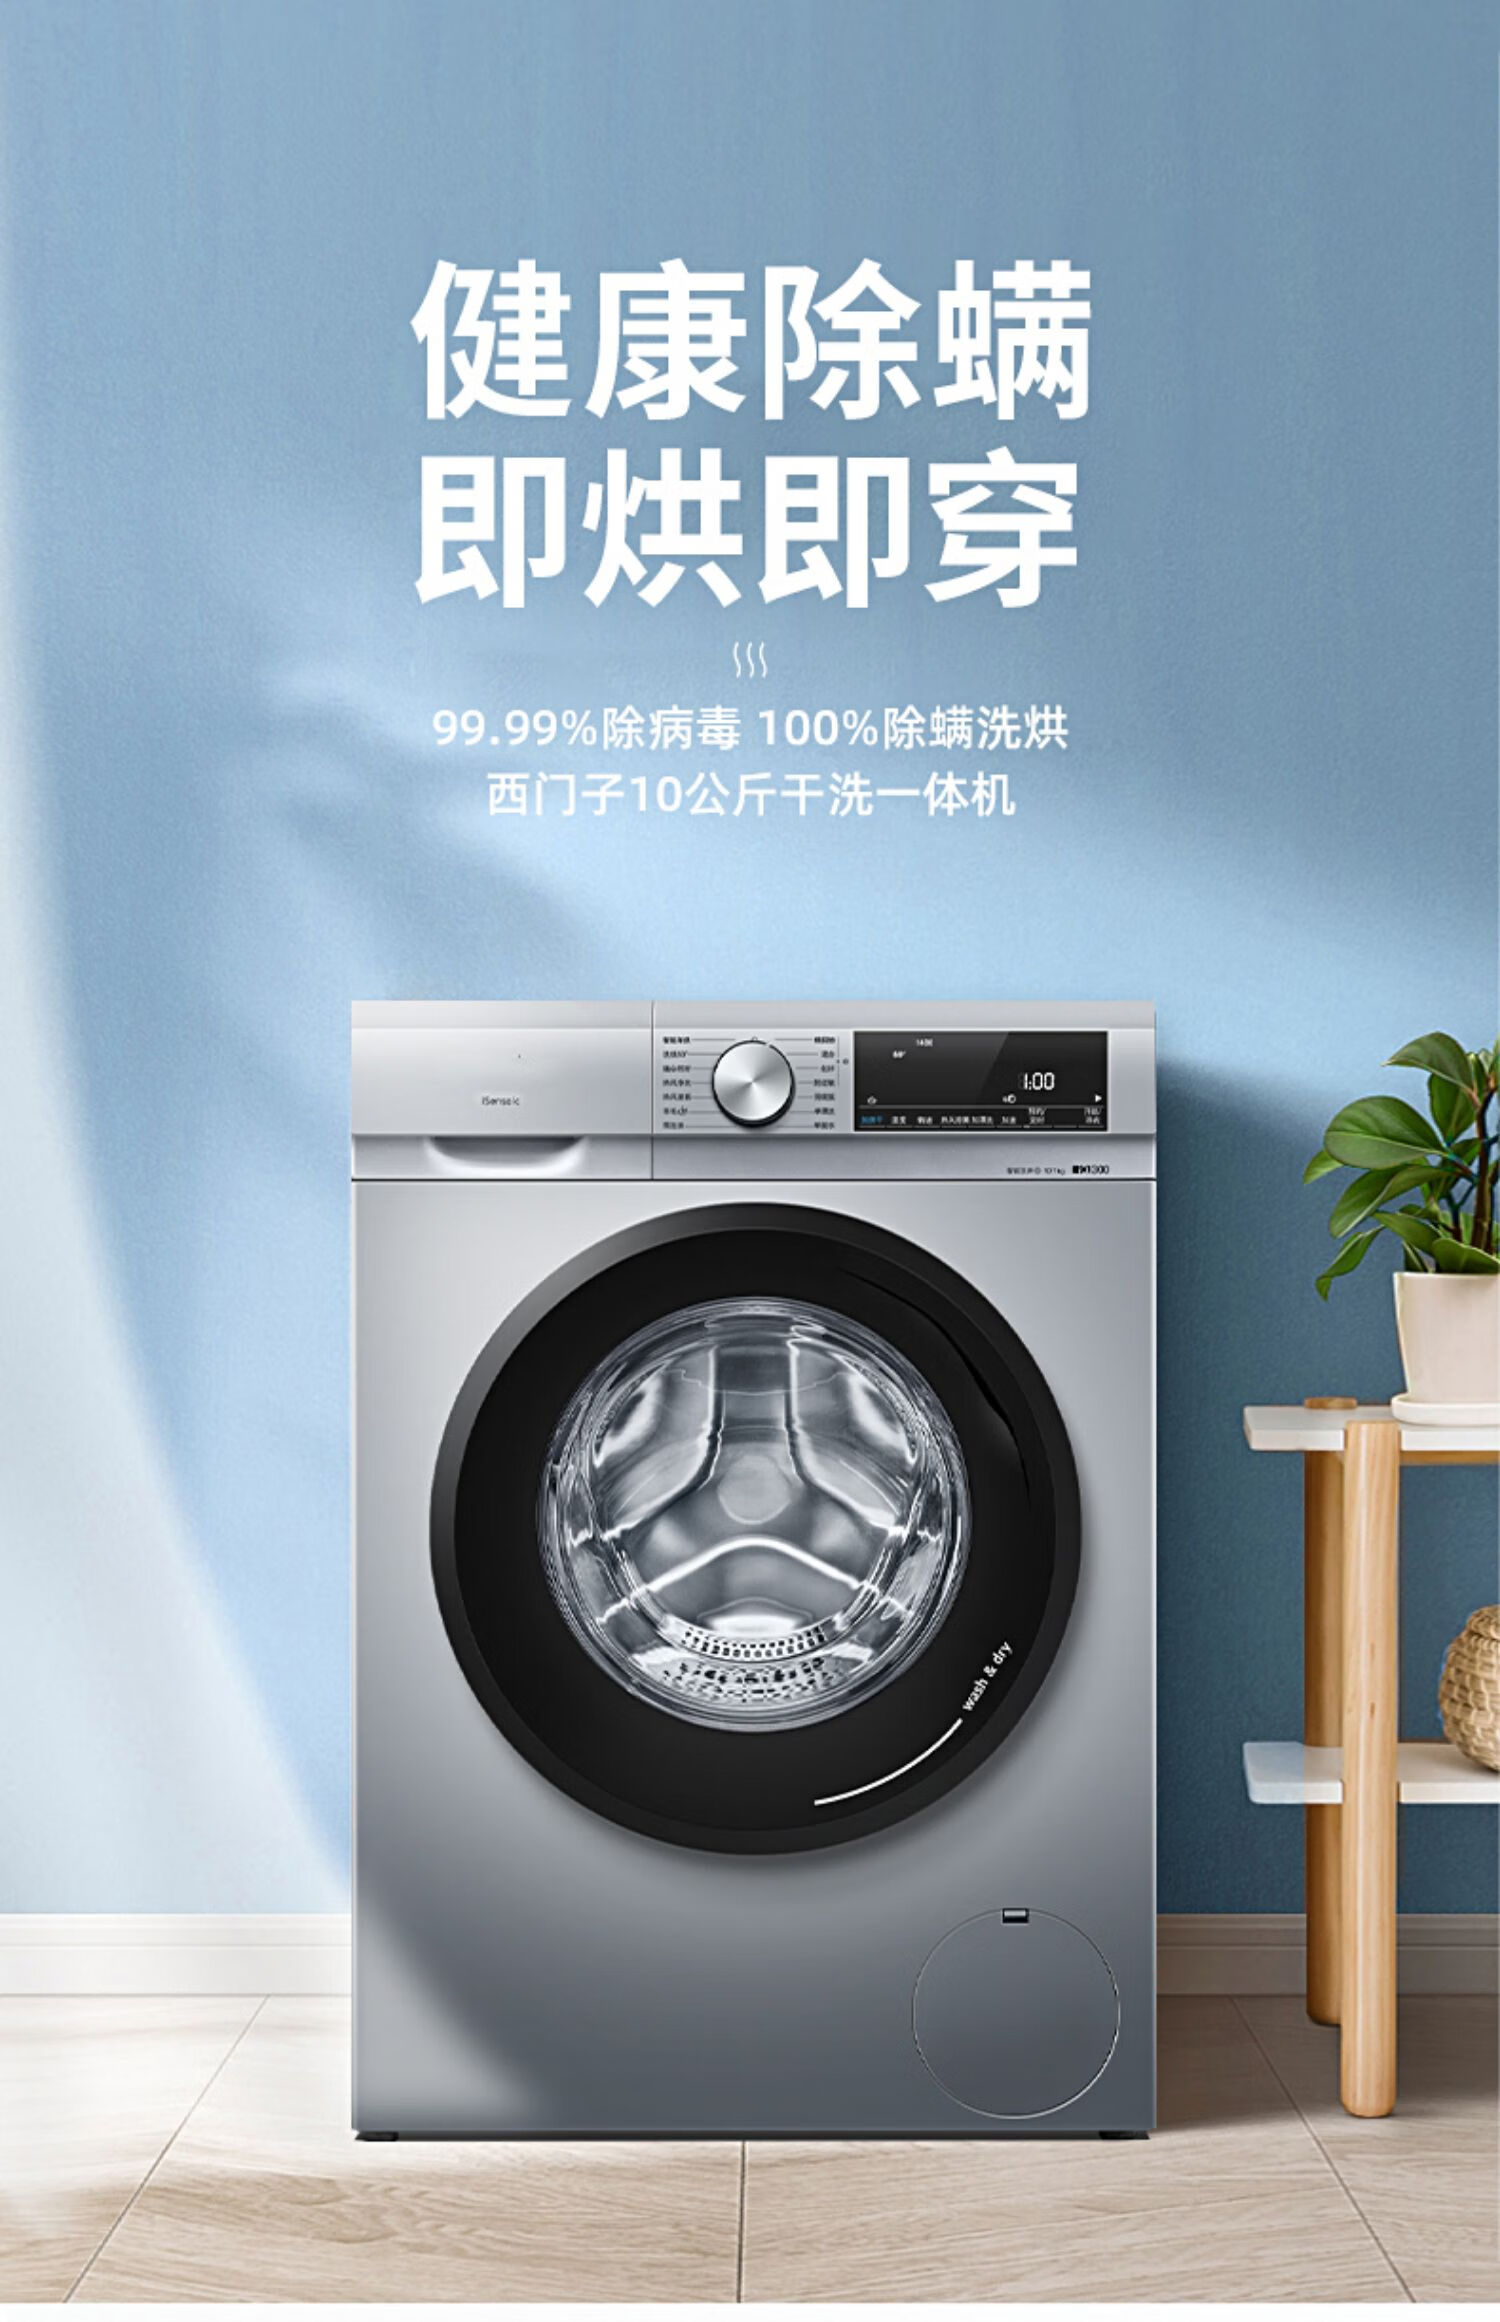 西门子10公斤全自动家用滚筒洗烘洗衣机a1x82w/x40w 银色【图片 价格